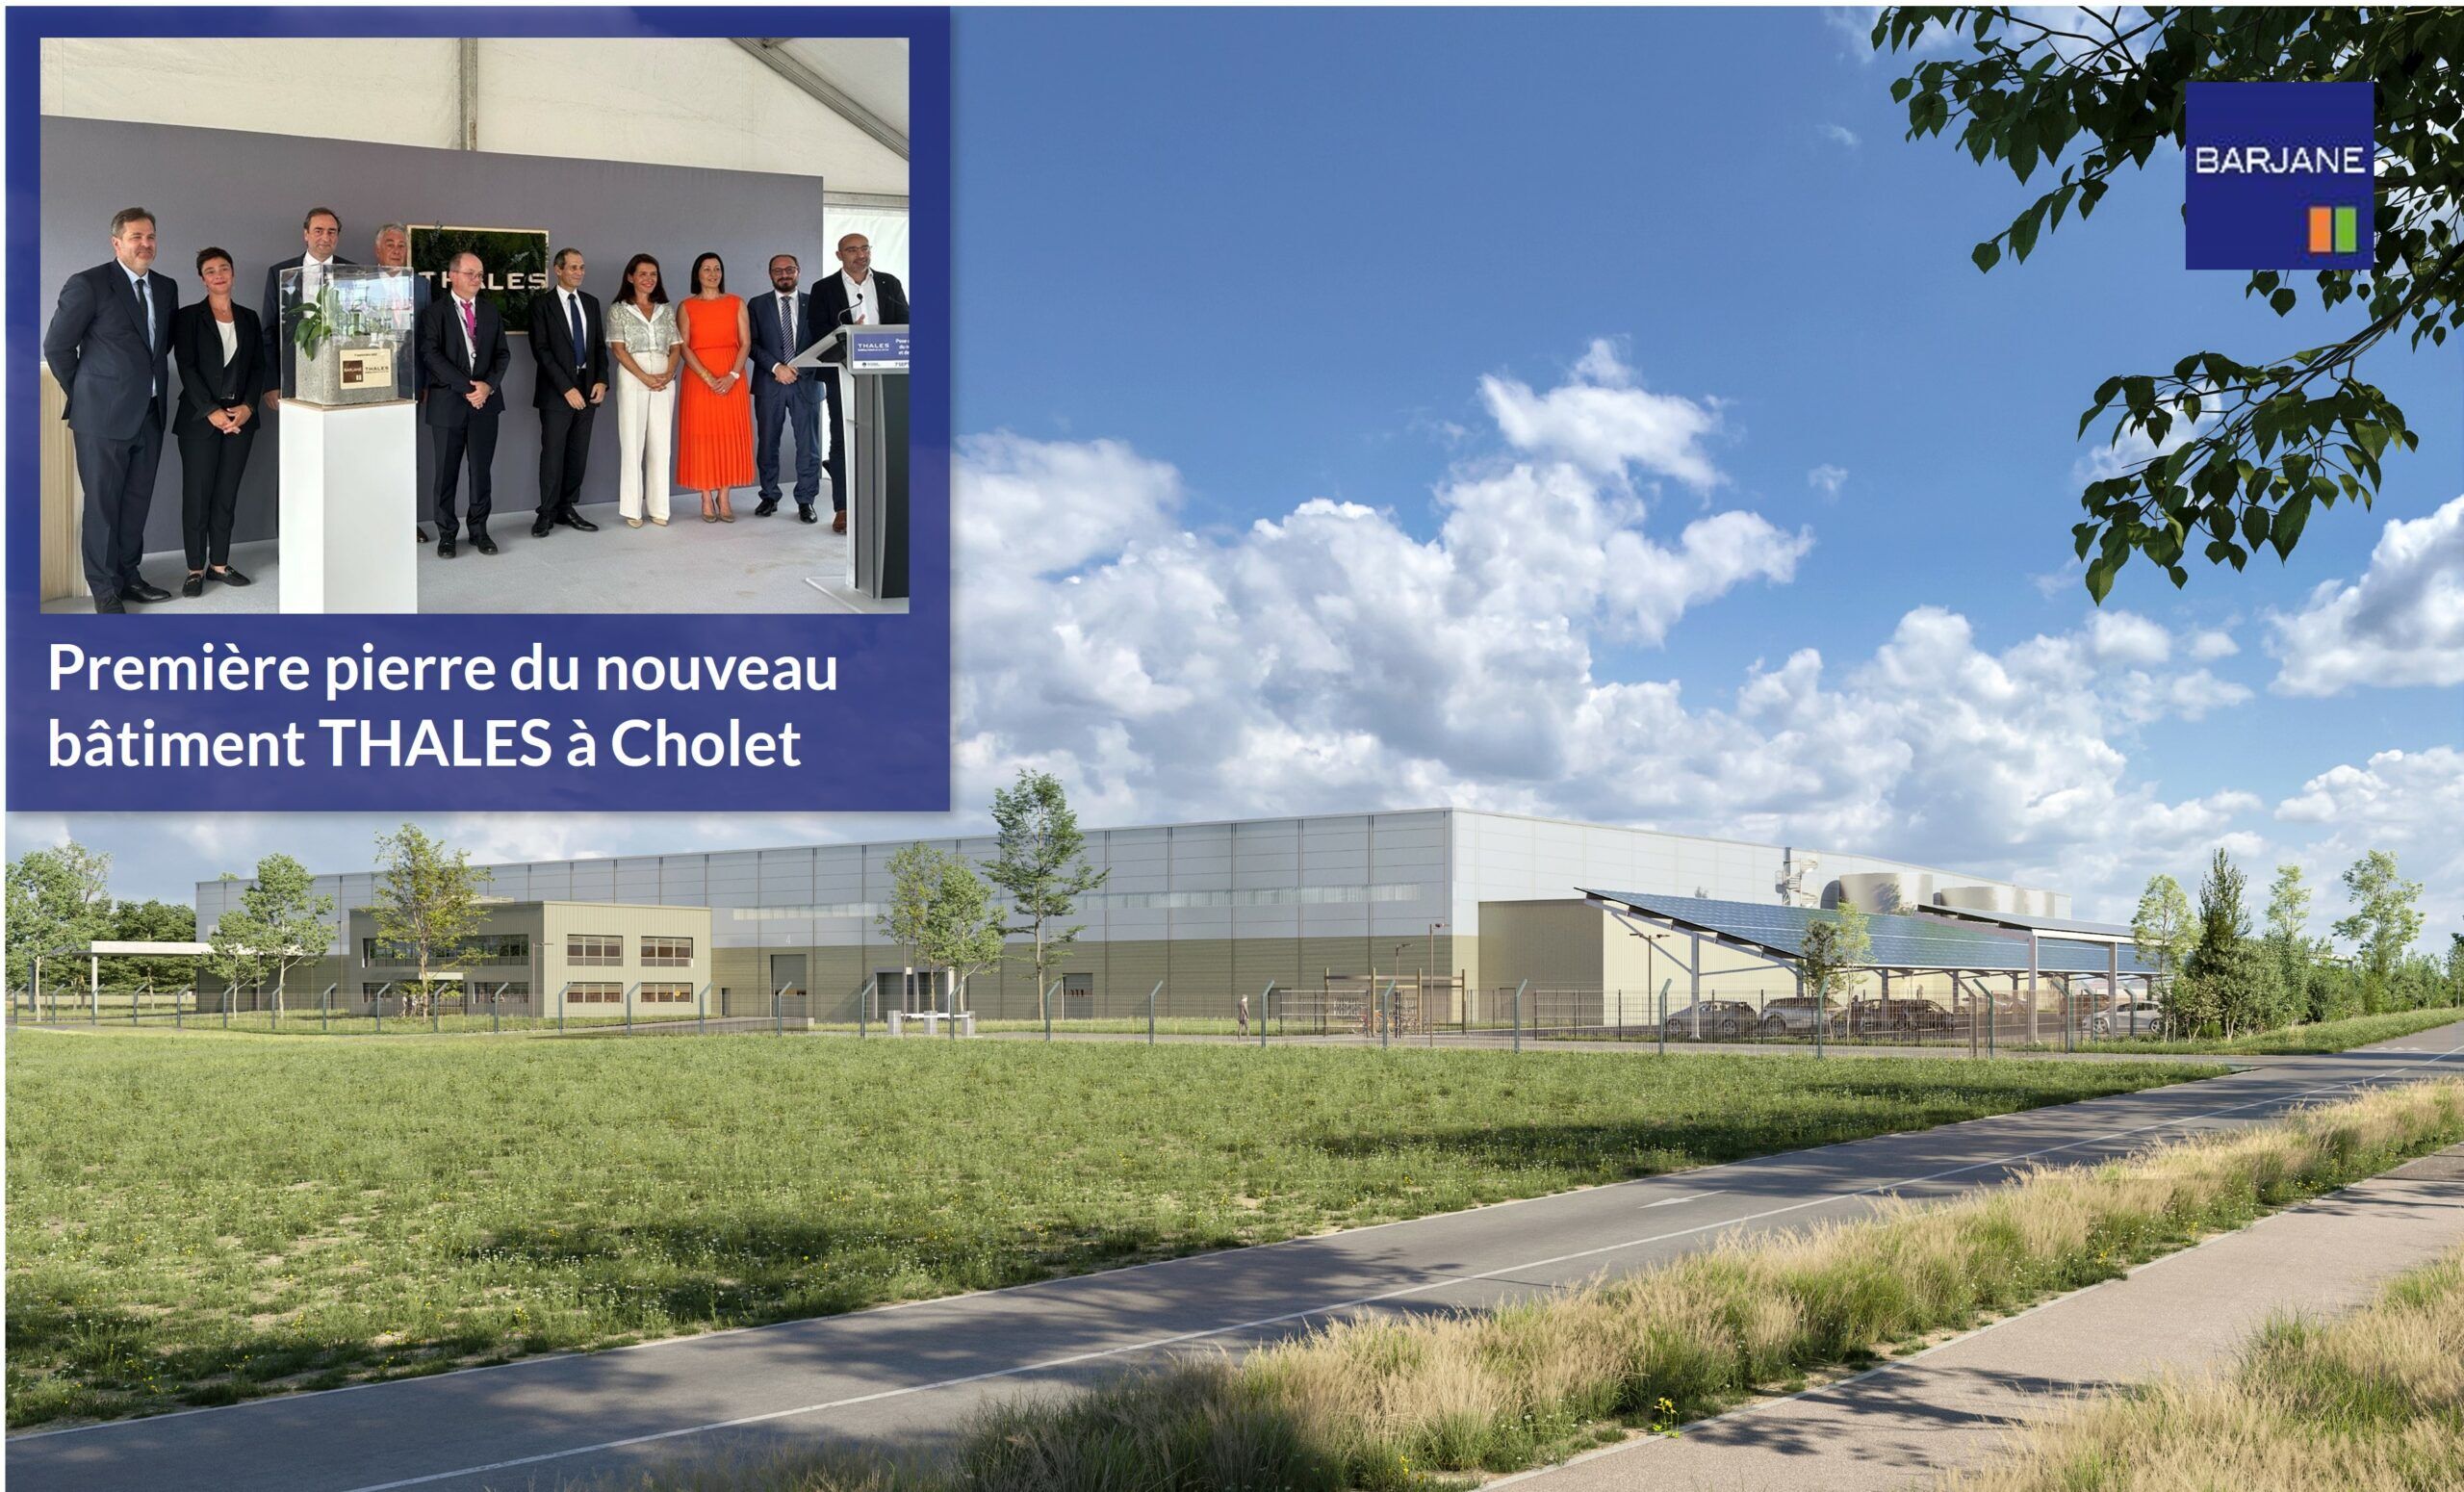 Première pierre du nouveau bâtiment Thales à Cholet